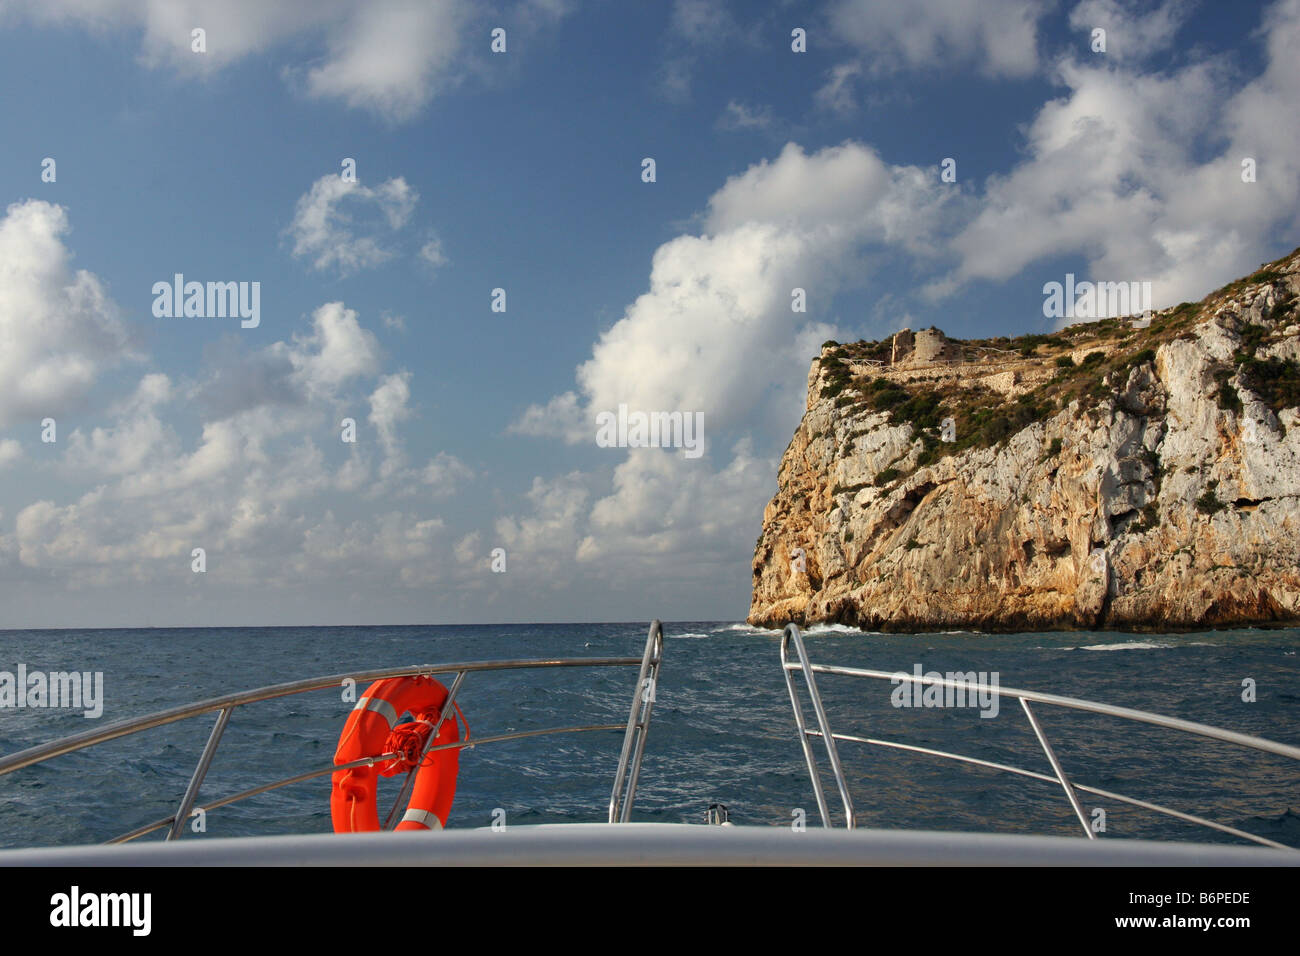 View of Morro Castel from a ship close to the Isla del Descubridor, La Granadella, Jávea, Alicante, Spain Stock Photo